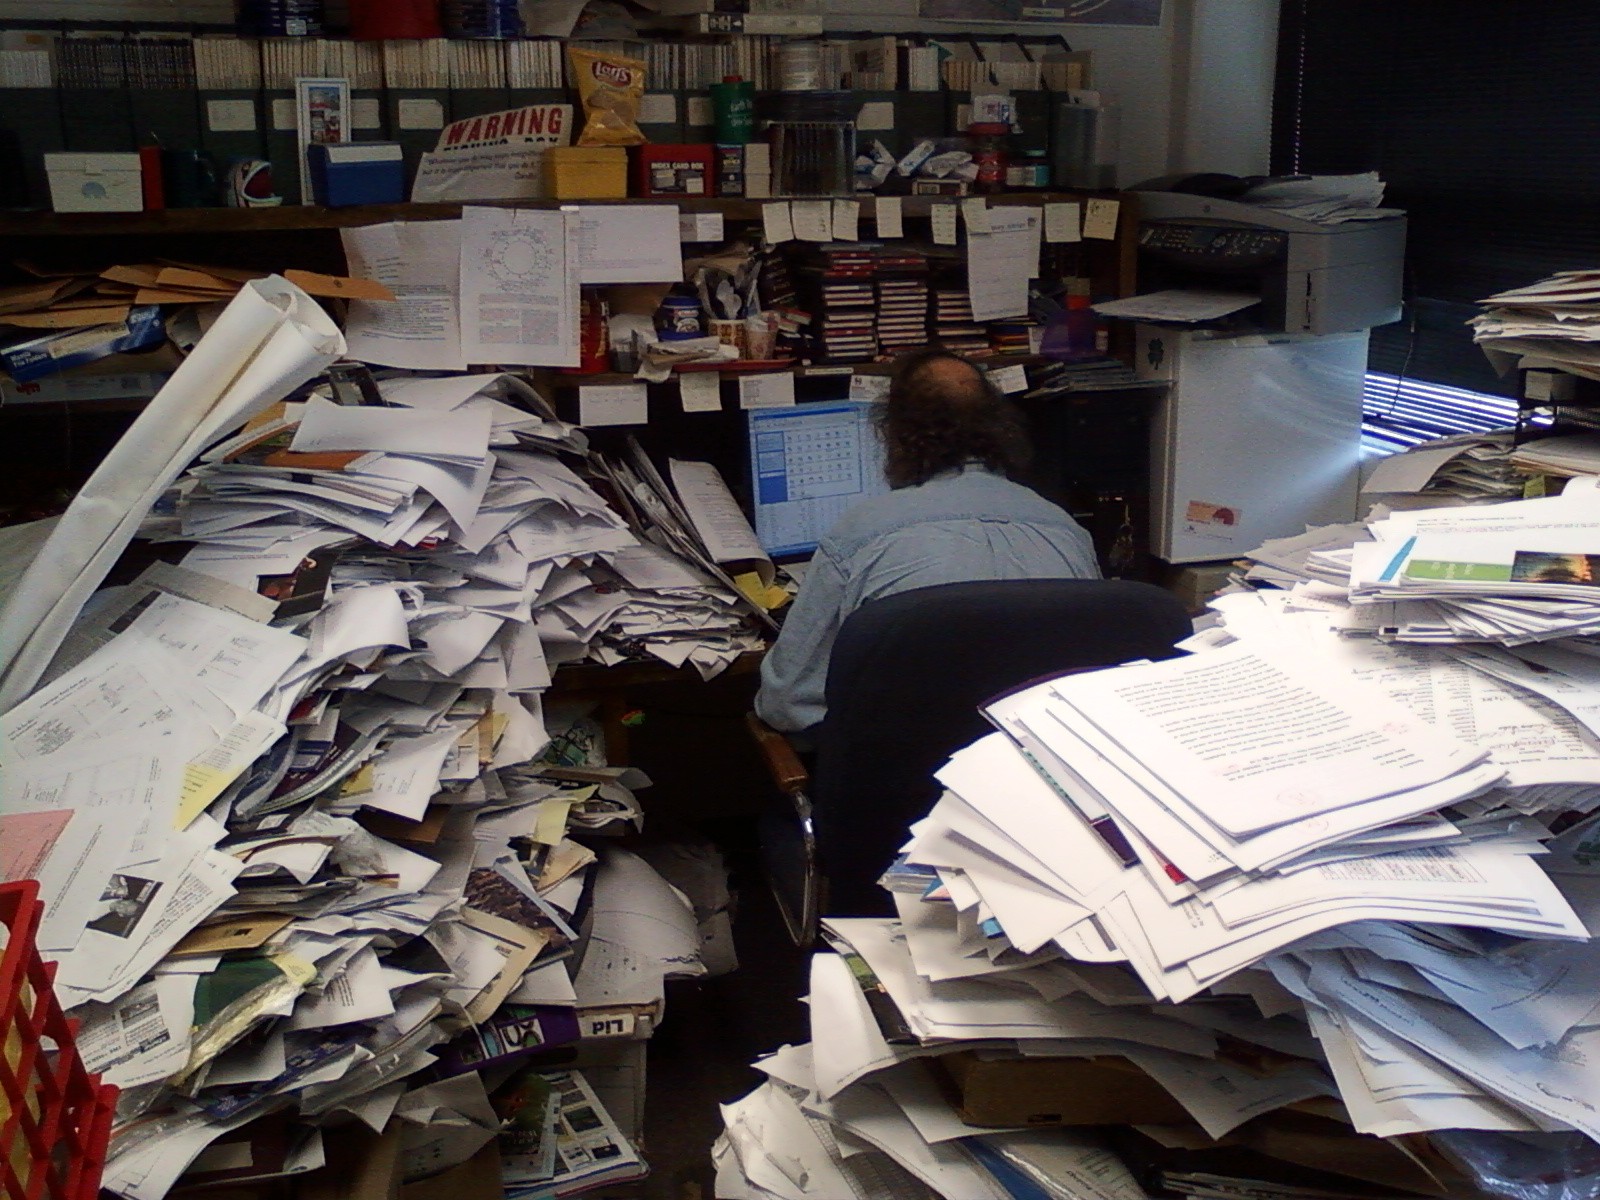 Вечером много работы было. Стол заваленный бумагами. Офис заваленный бумагами. Бумаги на столе. Завал бумаг на столе.